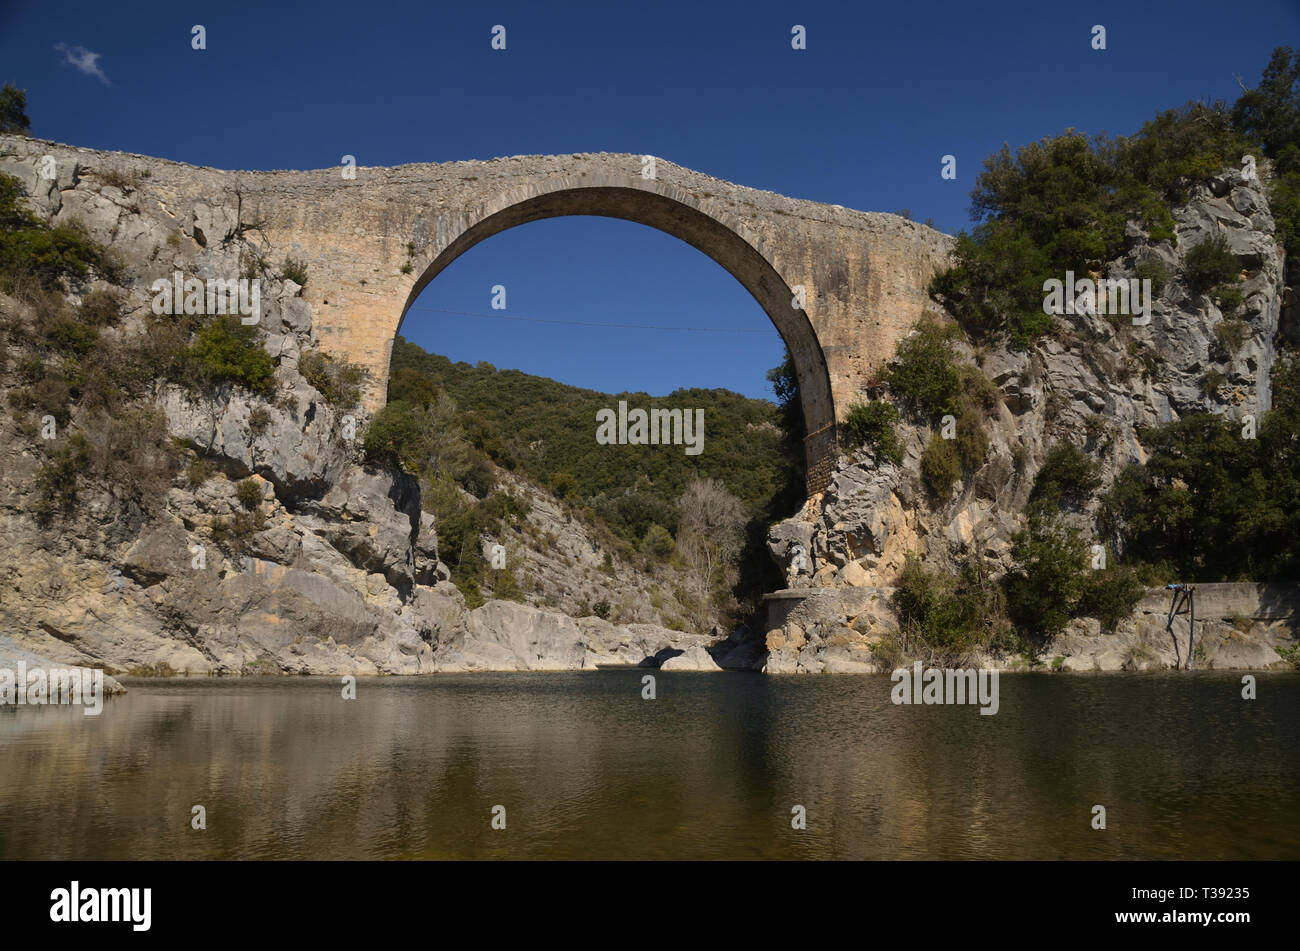 La grande arche en maçonnerie de pierre travée du pont sur la rivière Llierca dans la Garrotxa, est de l'Espagne Banque D'Images